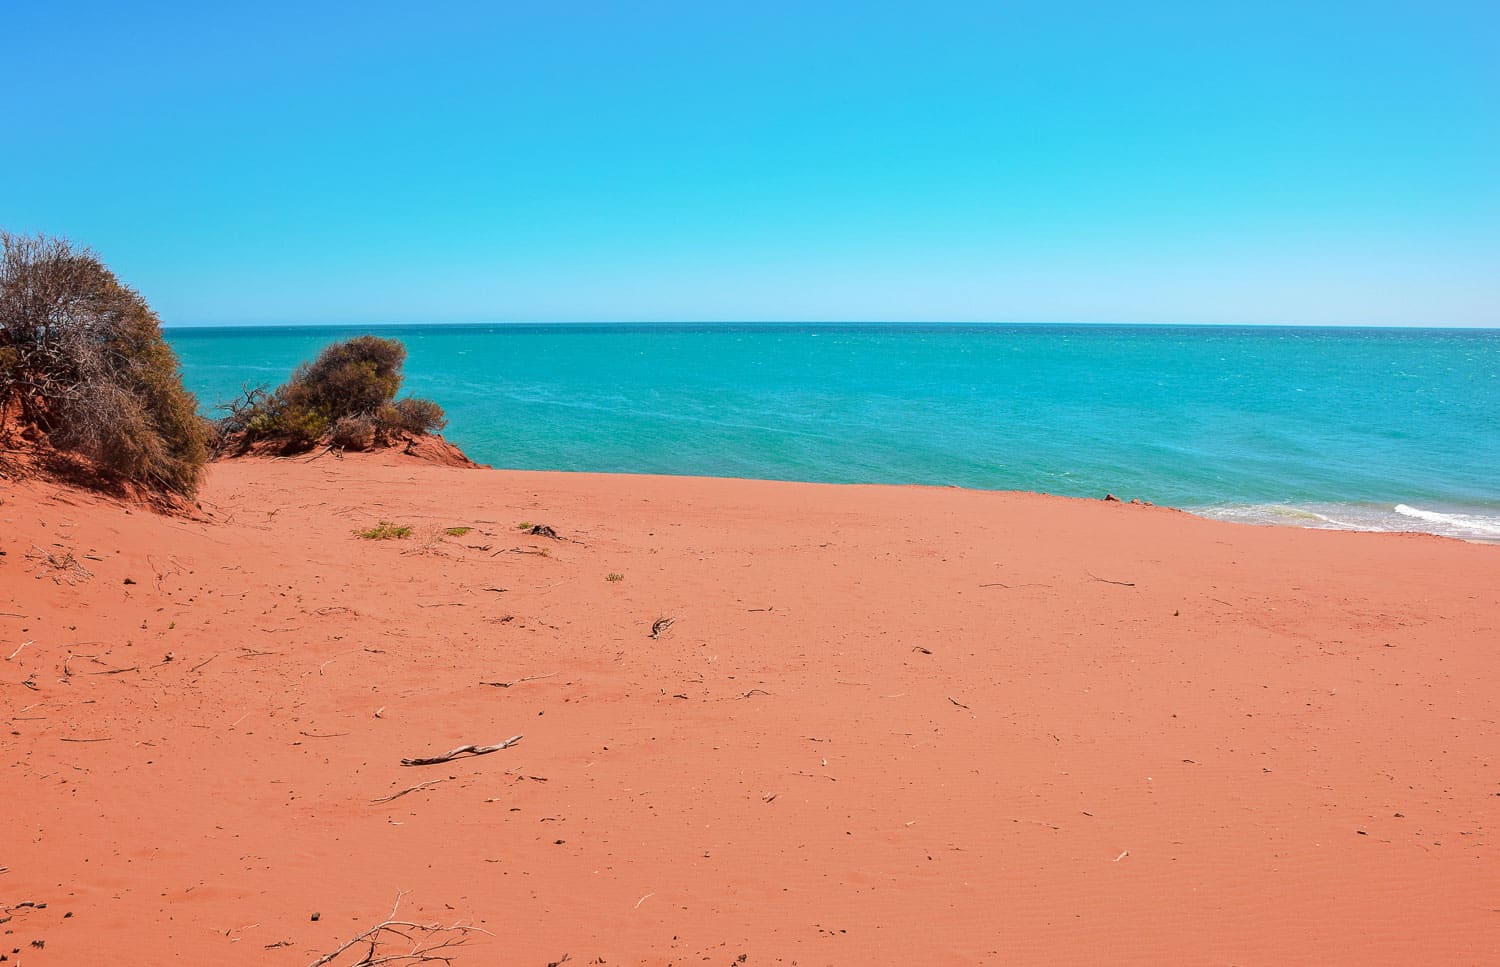 Parc National François Perron sur la côte ouest de l'Australie et sa terre rouge